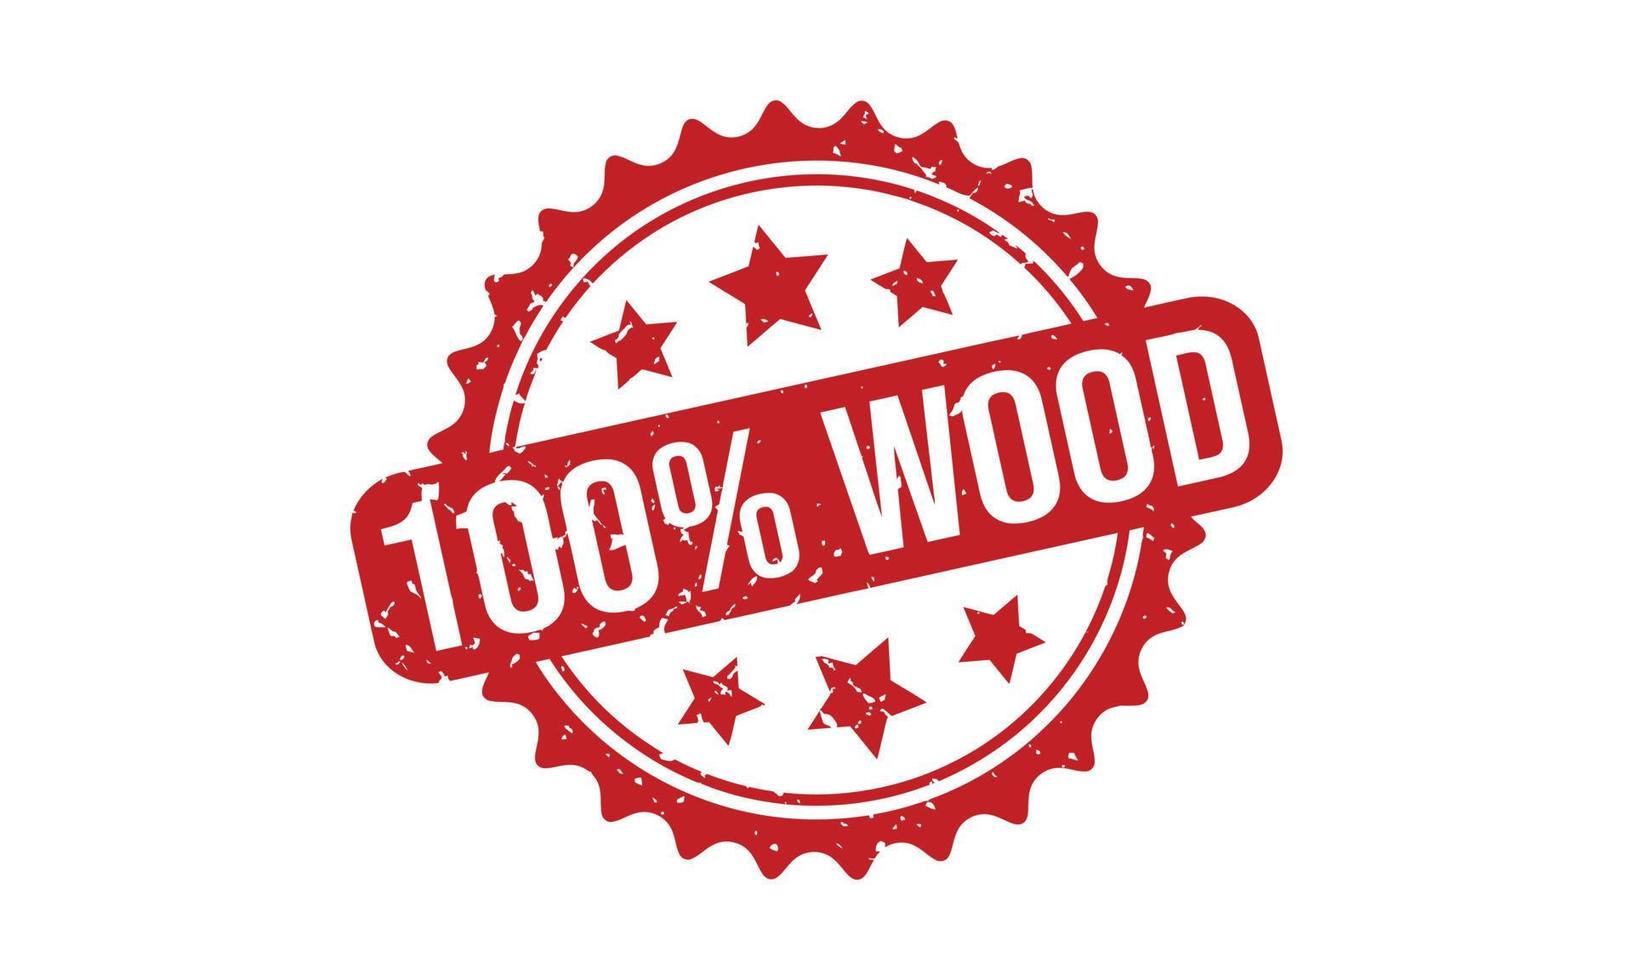 100 pour cent bois caoutchouc timbre vecteur